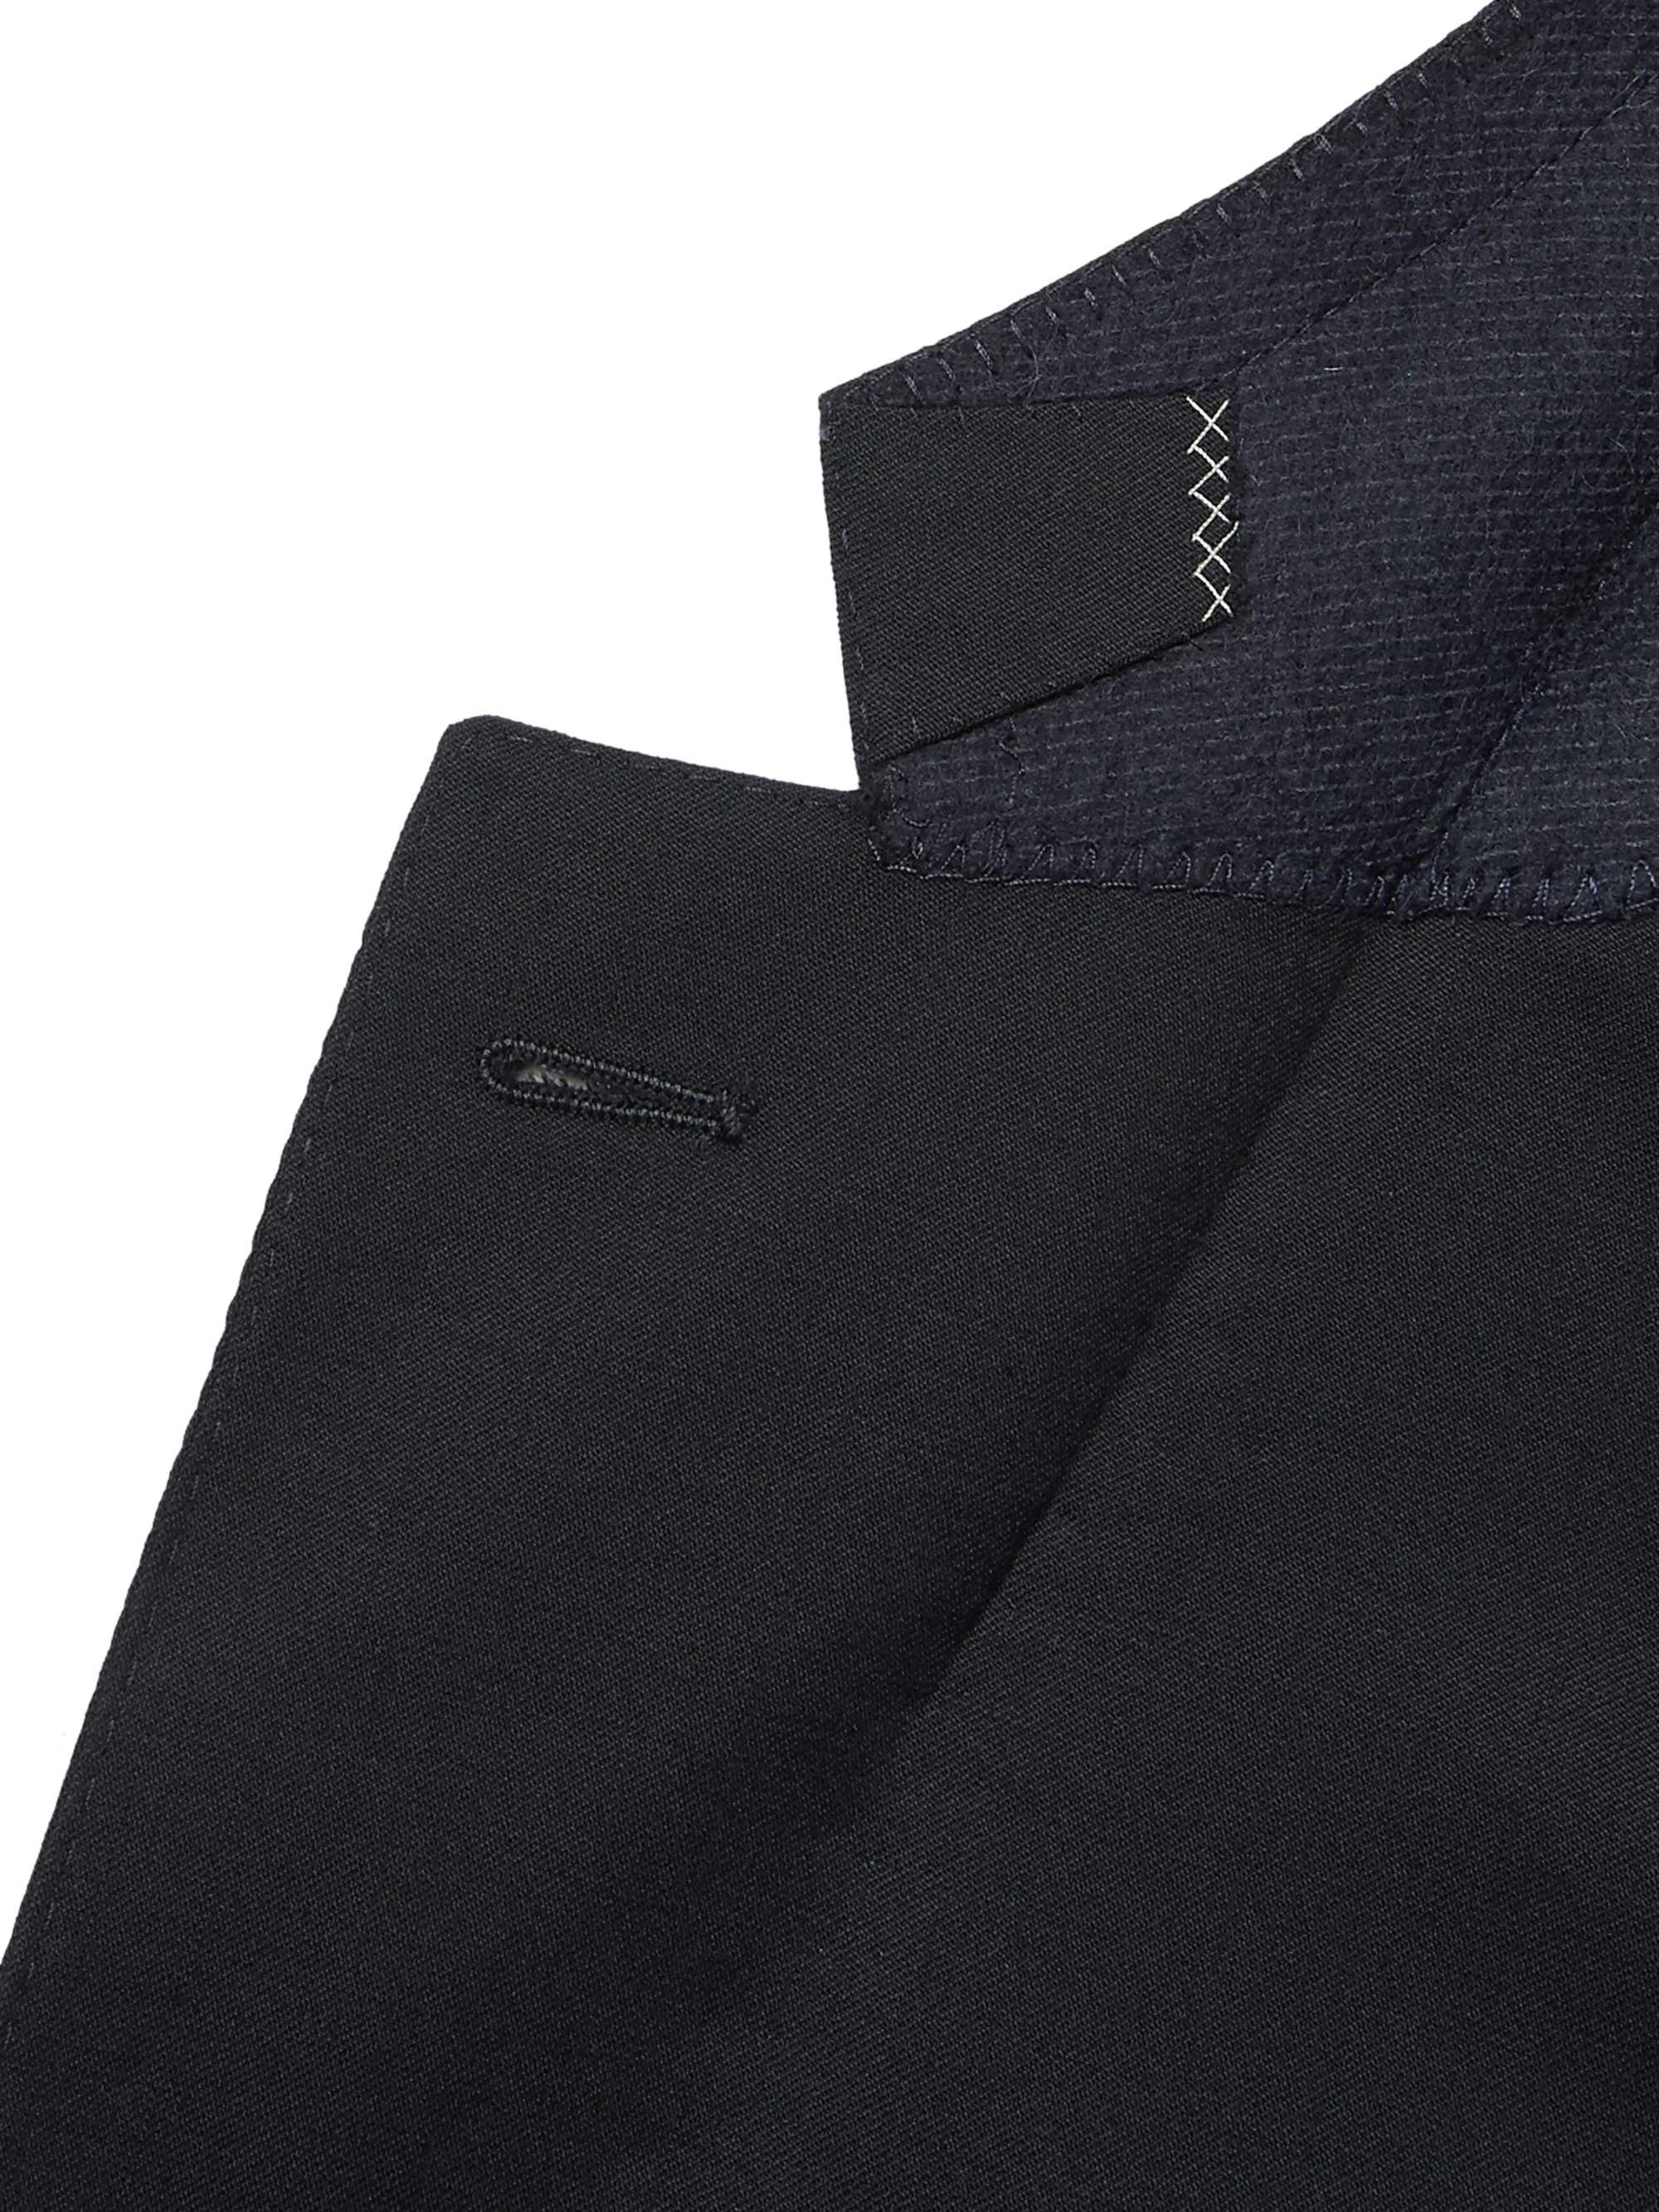 ZEGNA Midnight-Blue Slim-Fit Wool-Twill Suit